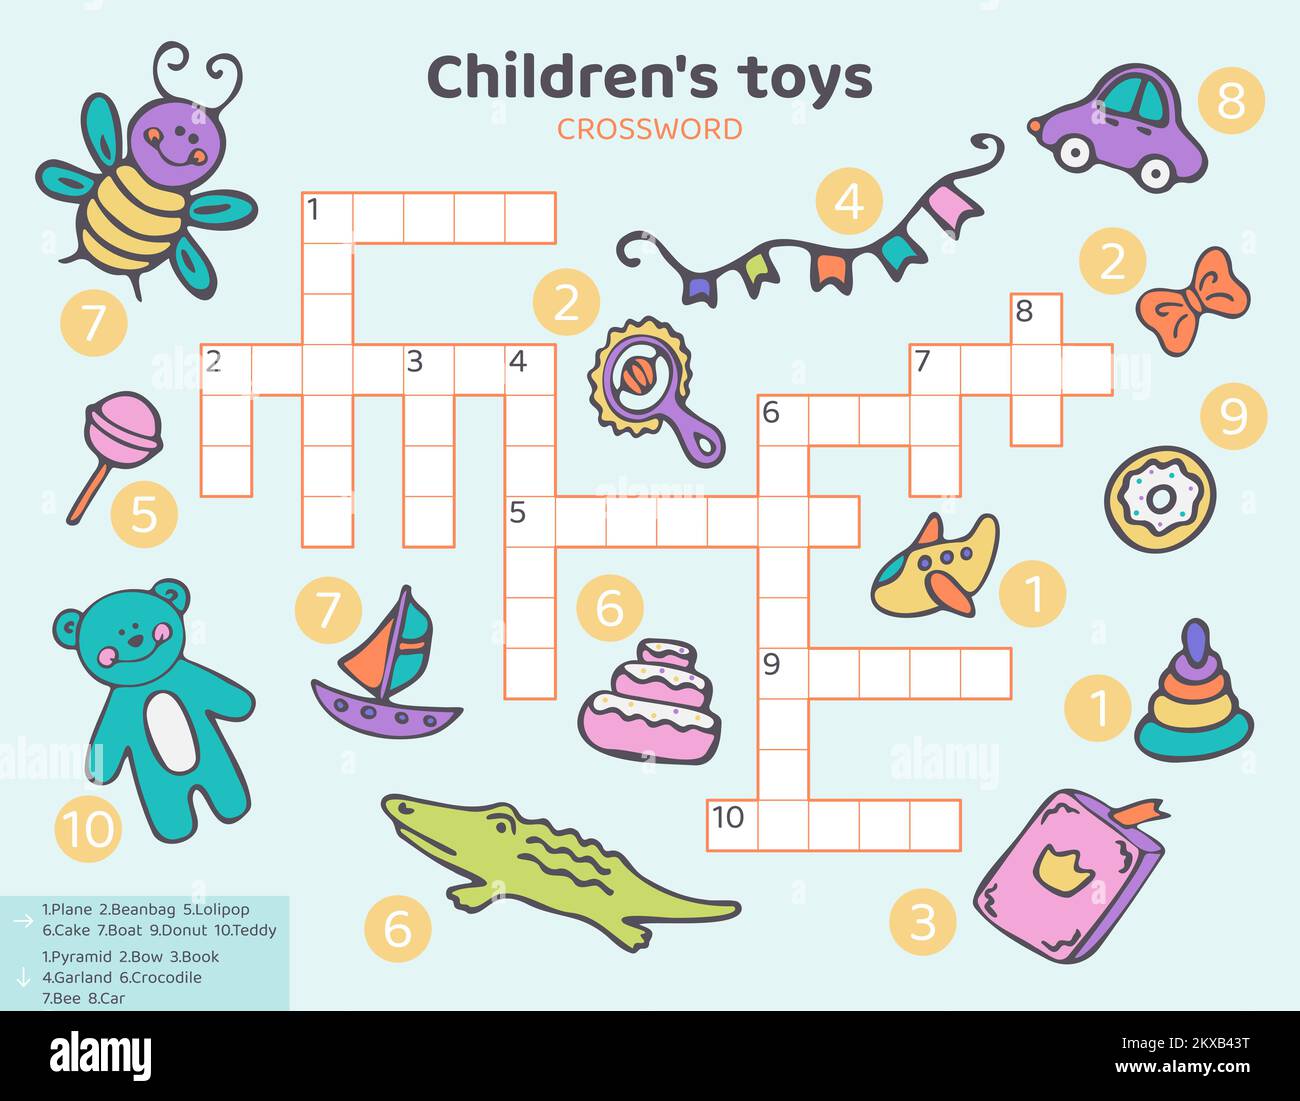 Mots croisés anglais pour enfants avec jouets pour enfants. Illustration de Vecteur